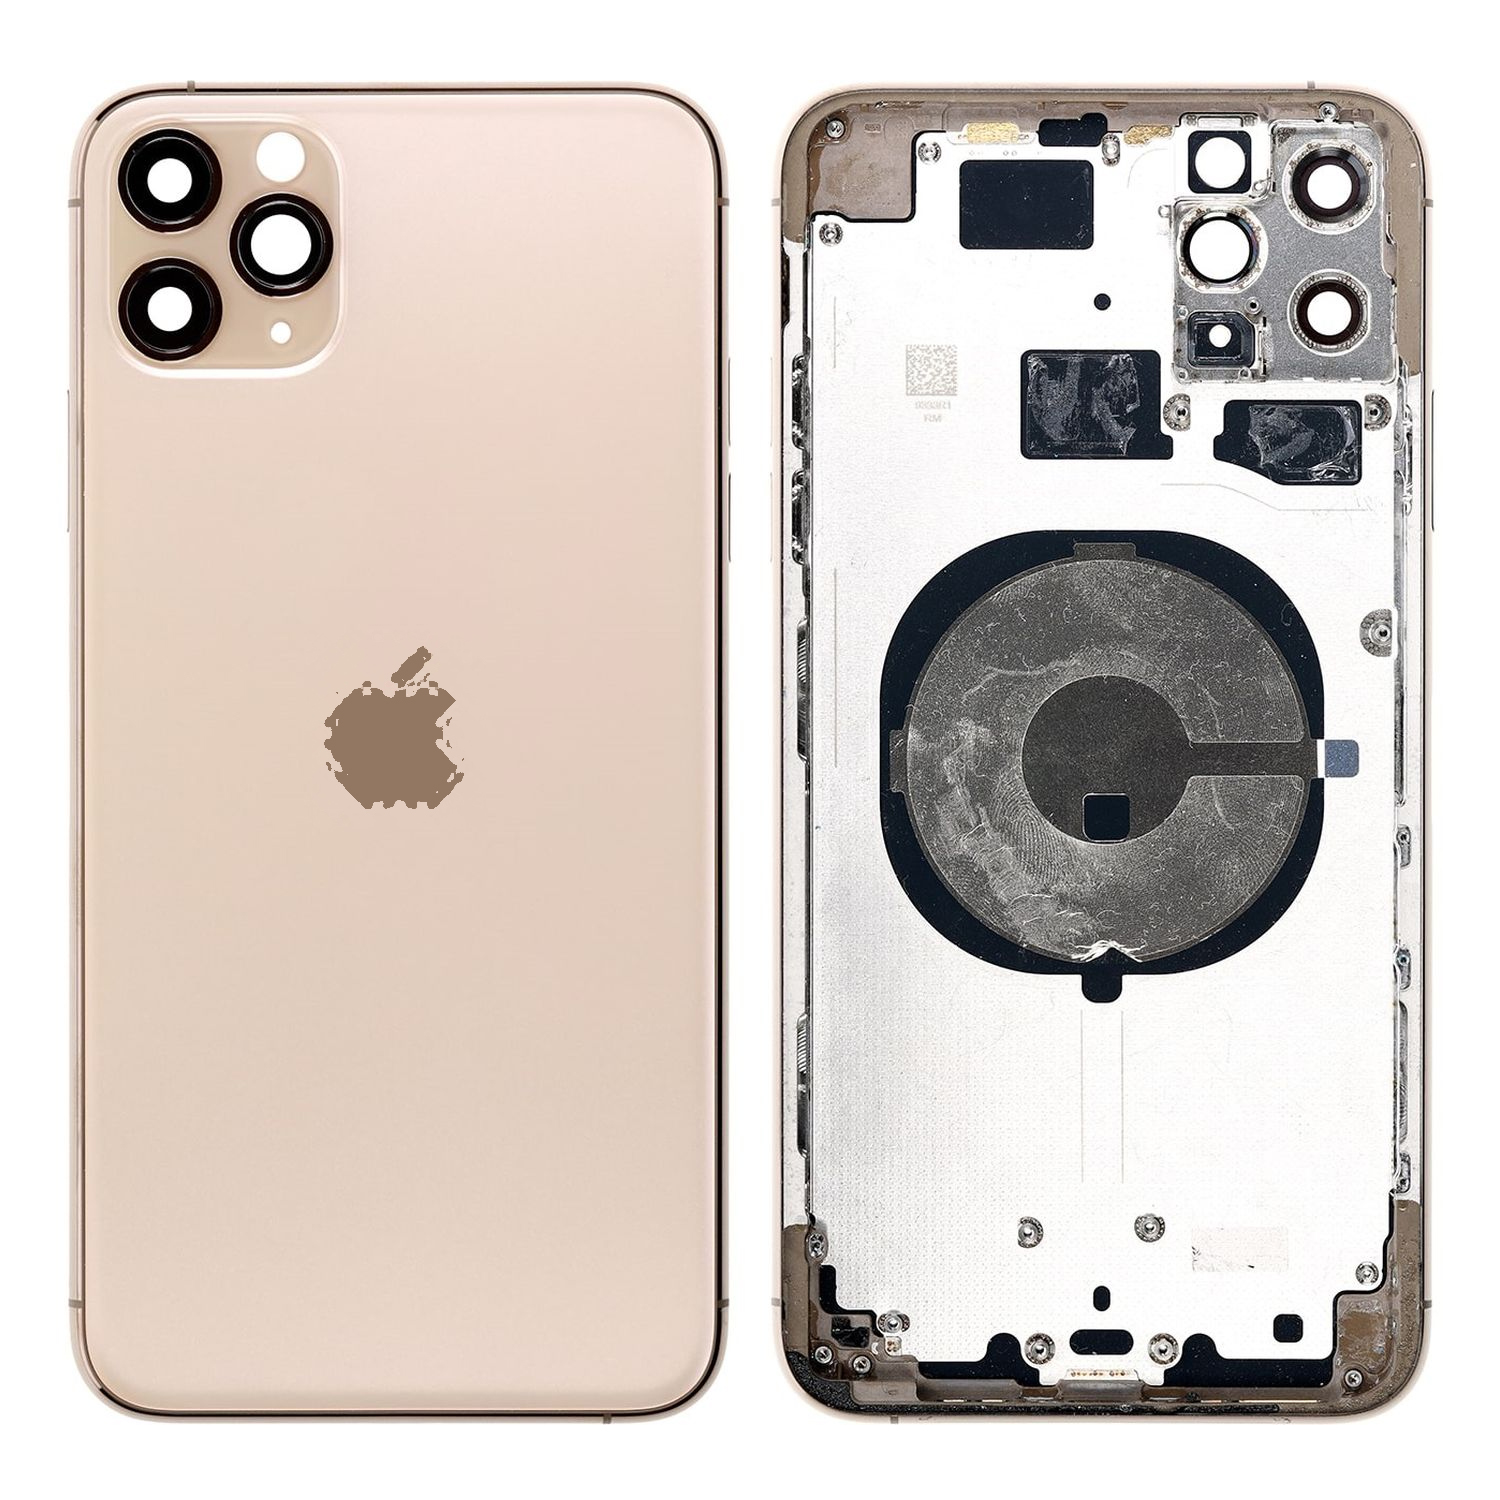 Apple iPhone 11 Pro Ficha Técnica, Precio y Opiniones - CERTIDEAL